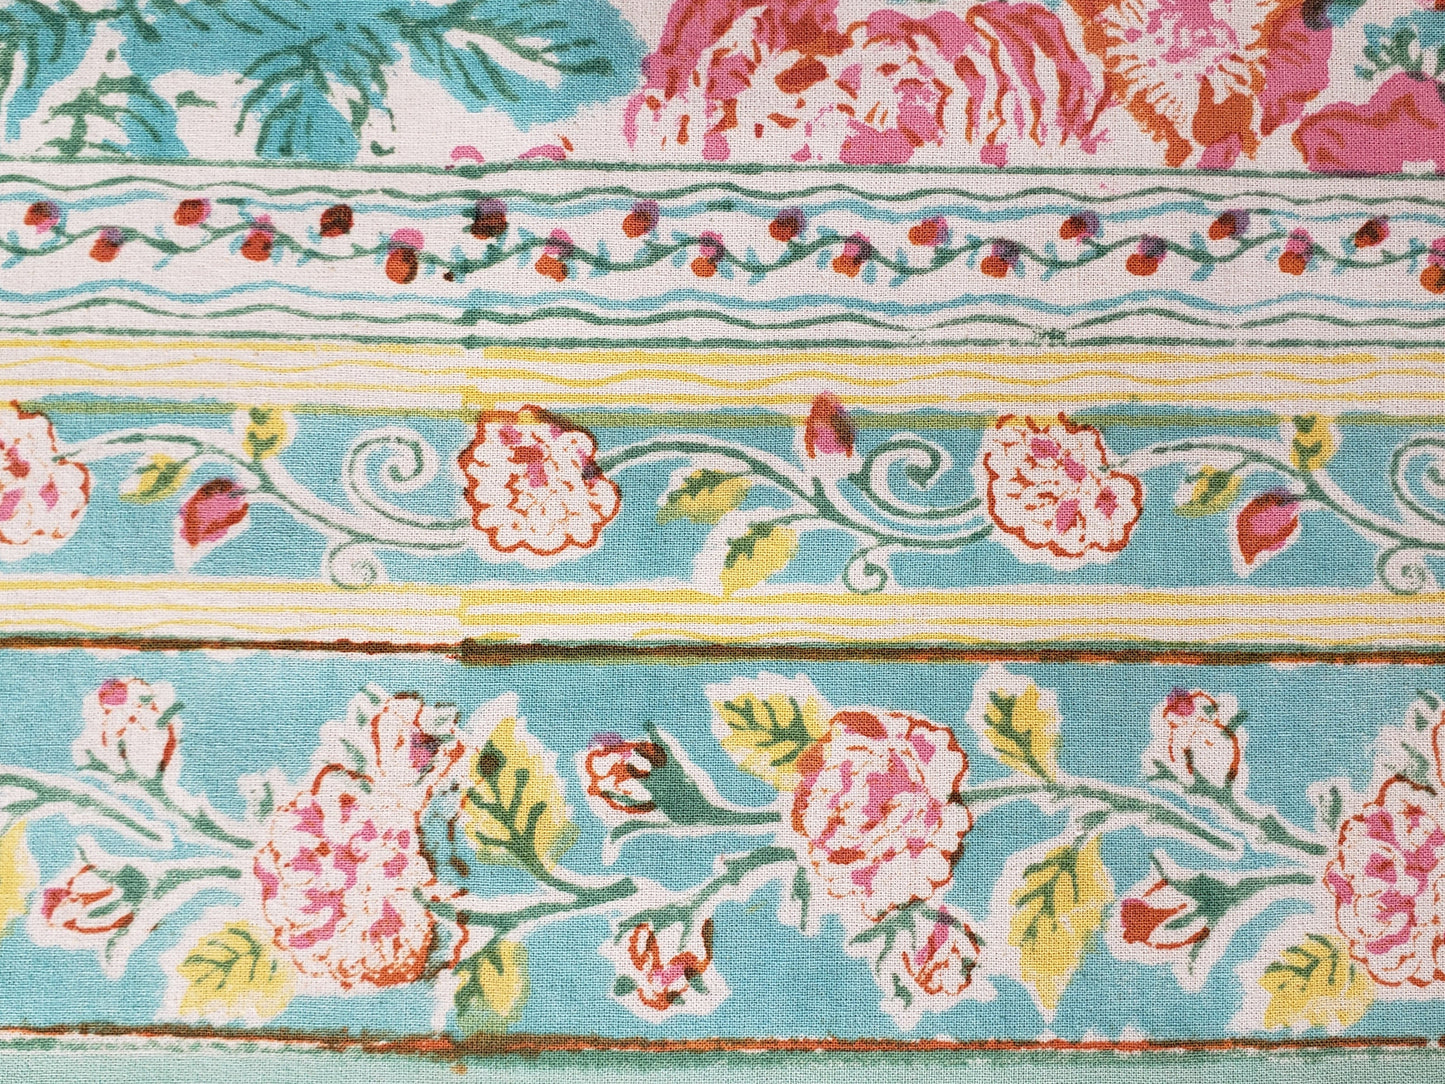 Borde de mantel cuadrado base blanca estampado a mano con flores rosas y naranjas con filos turquesa. Hecho en la India